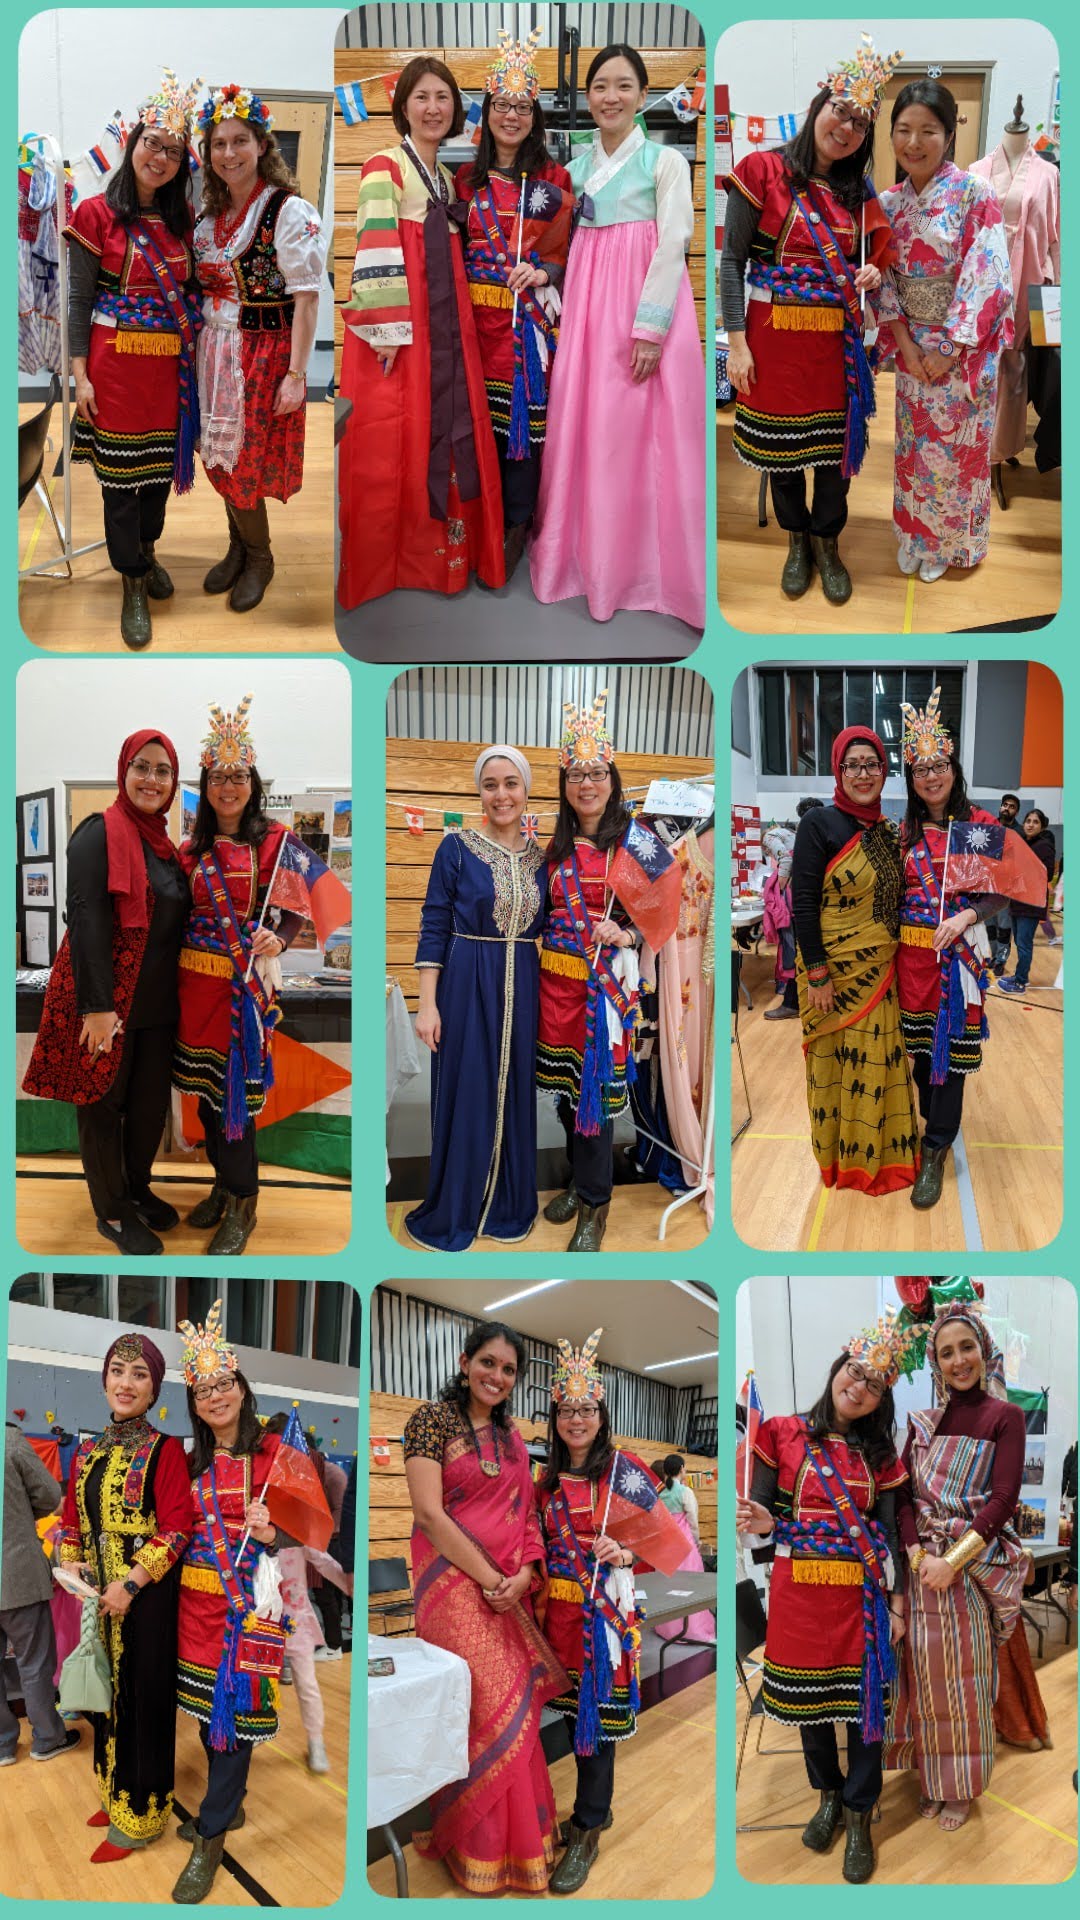 賴筱雯穿著臺灣原住民服飾與各國民俗服飾拍照